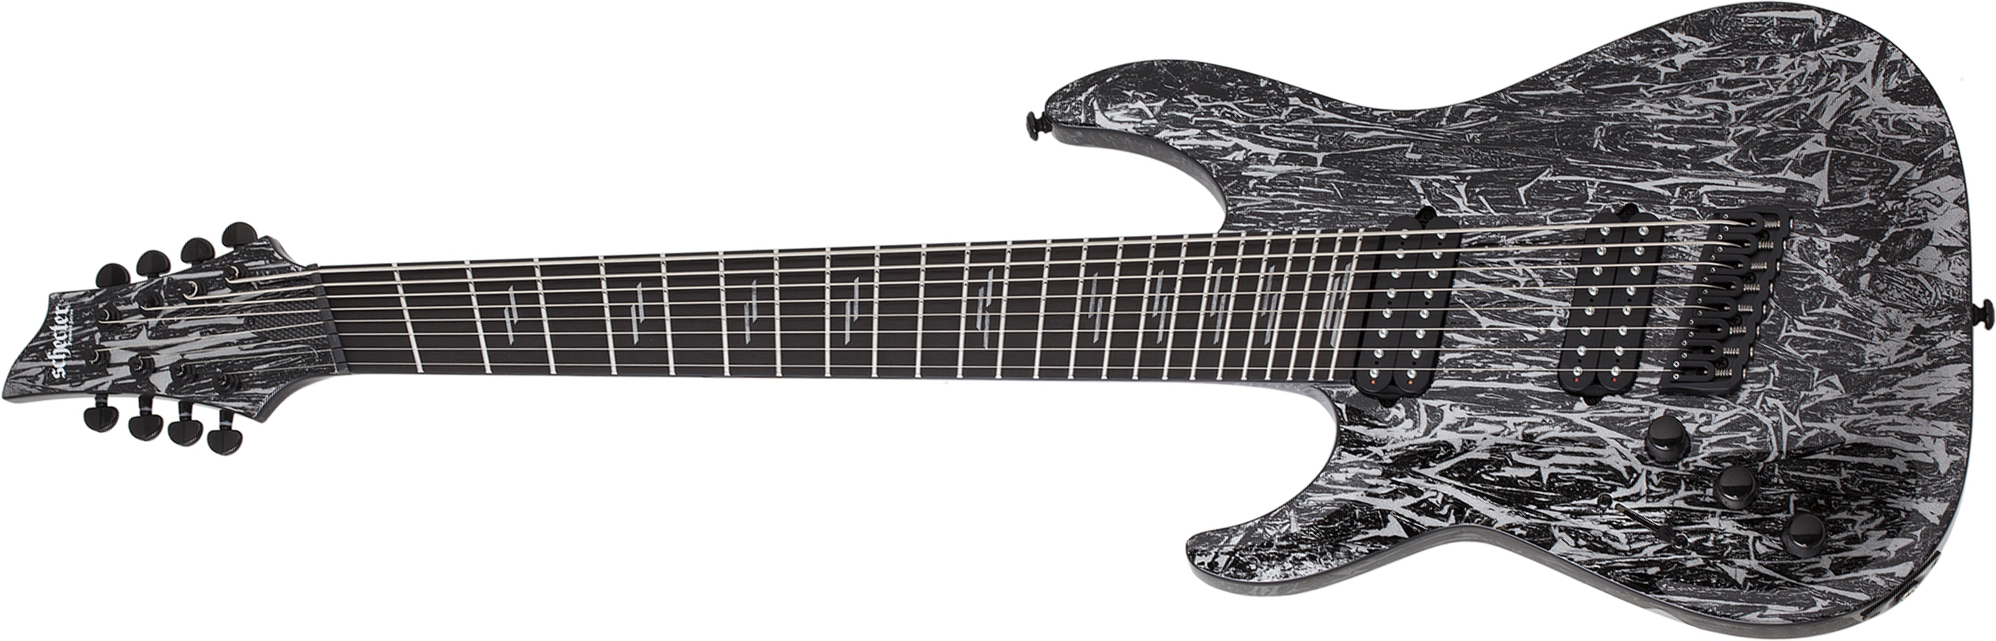 Schecter C-8 Multiscale Lh 8c Gaucher Baryton 2h Ht Eb - Silver Mountain - Linkshandige elektrische gitaar - Main picture